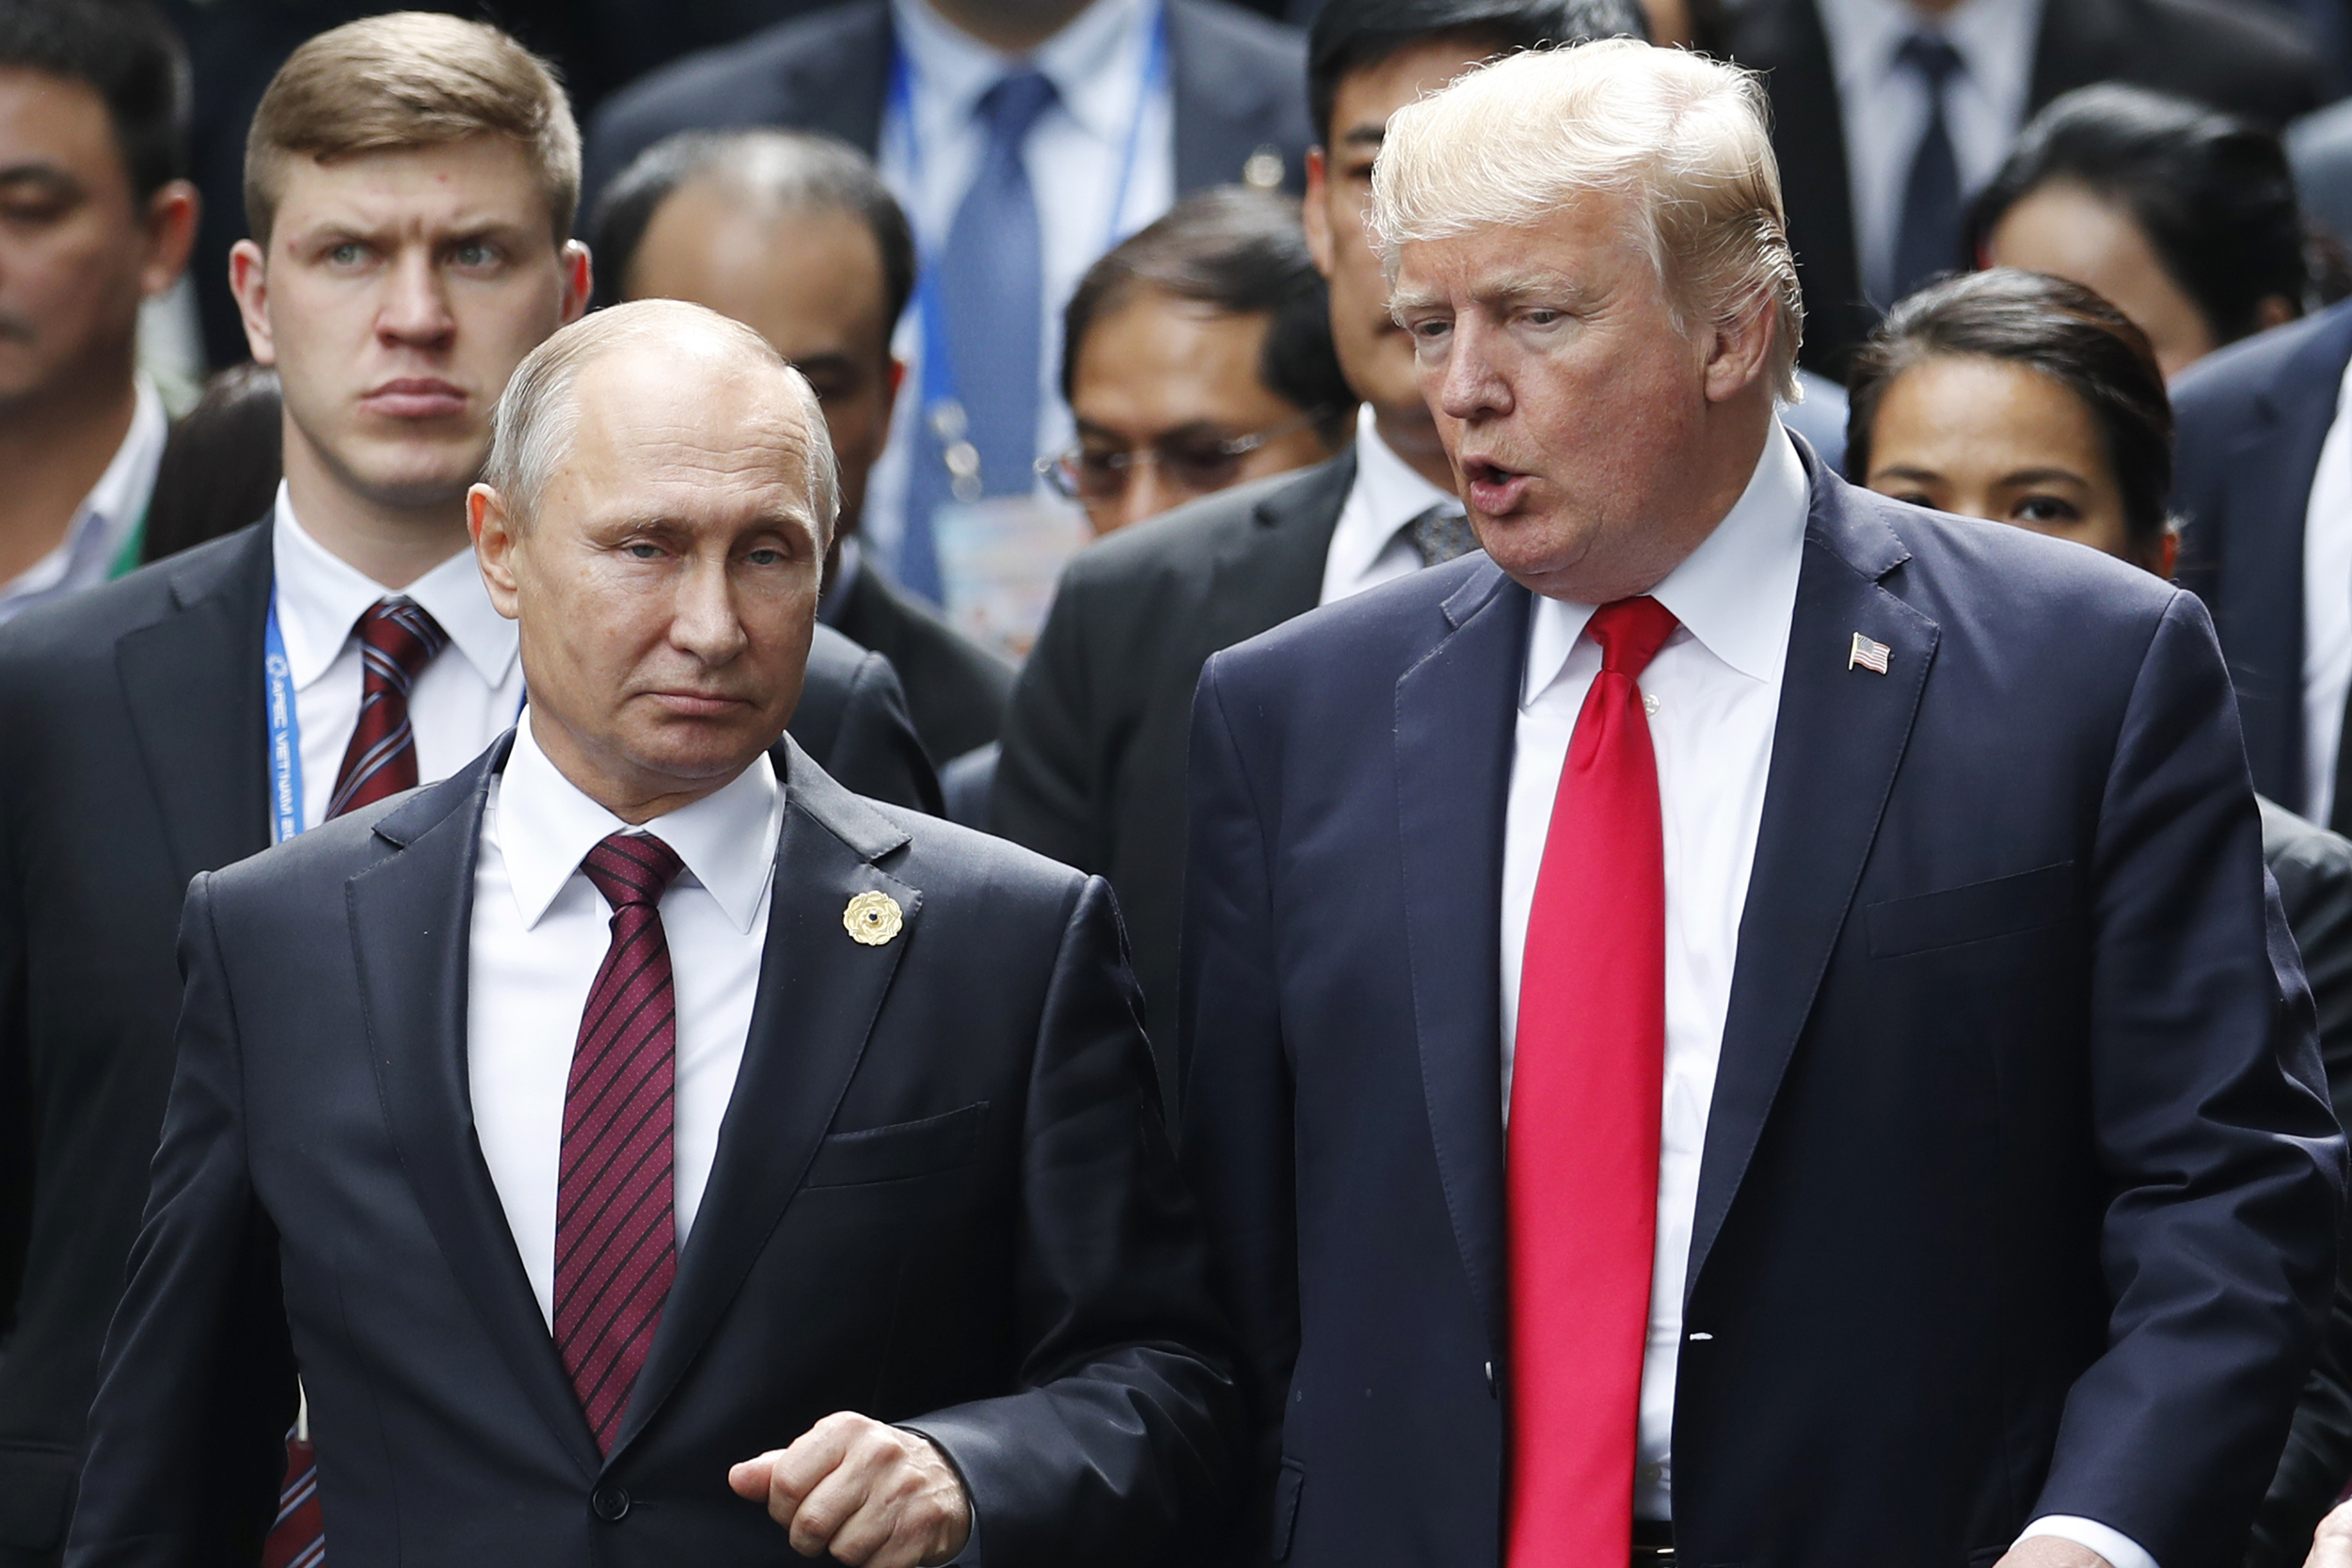 Mosca solidarizza con Donald Trump: "Gli Usa lo condannano per eliminare un avversario politico"